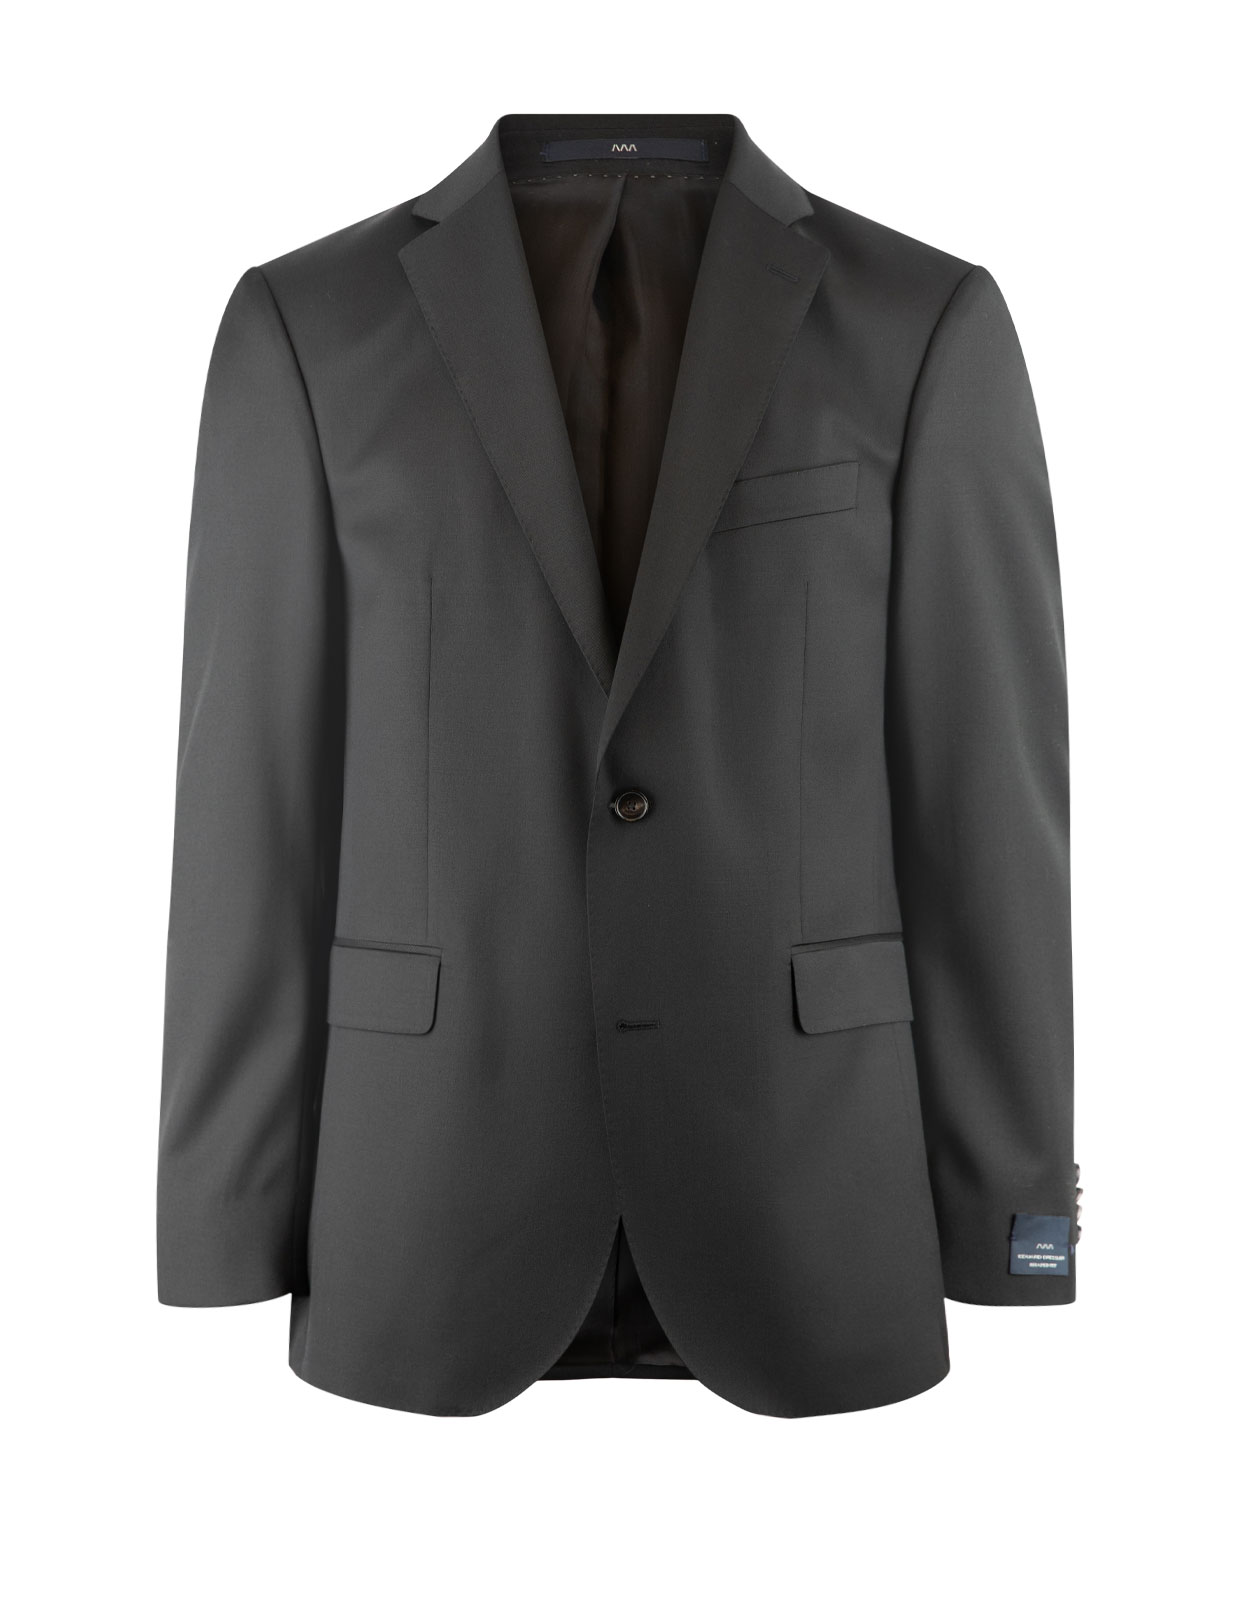 Edson Suit Jacket 110's Wool Mix & Match Black Stl 48